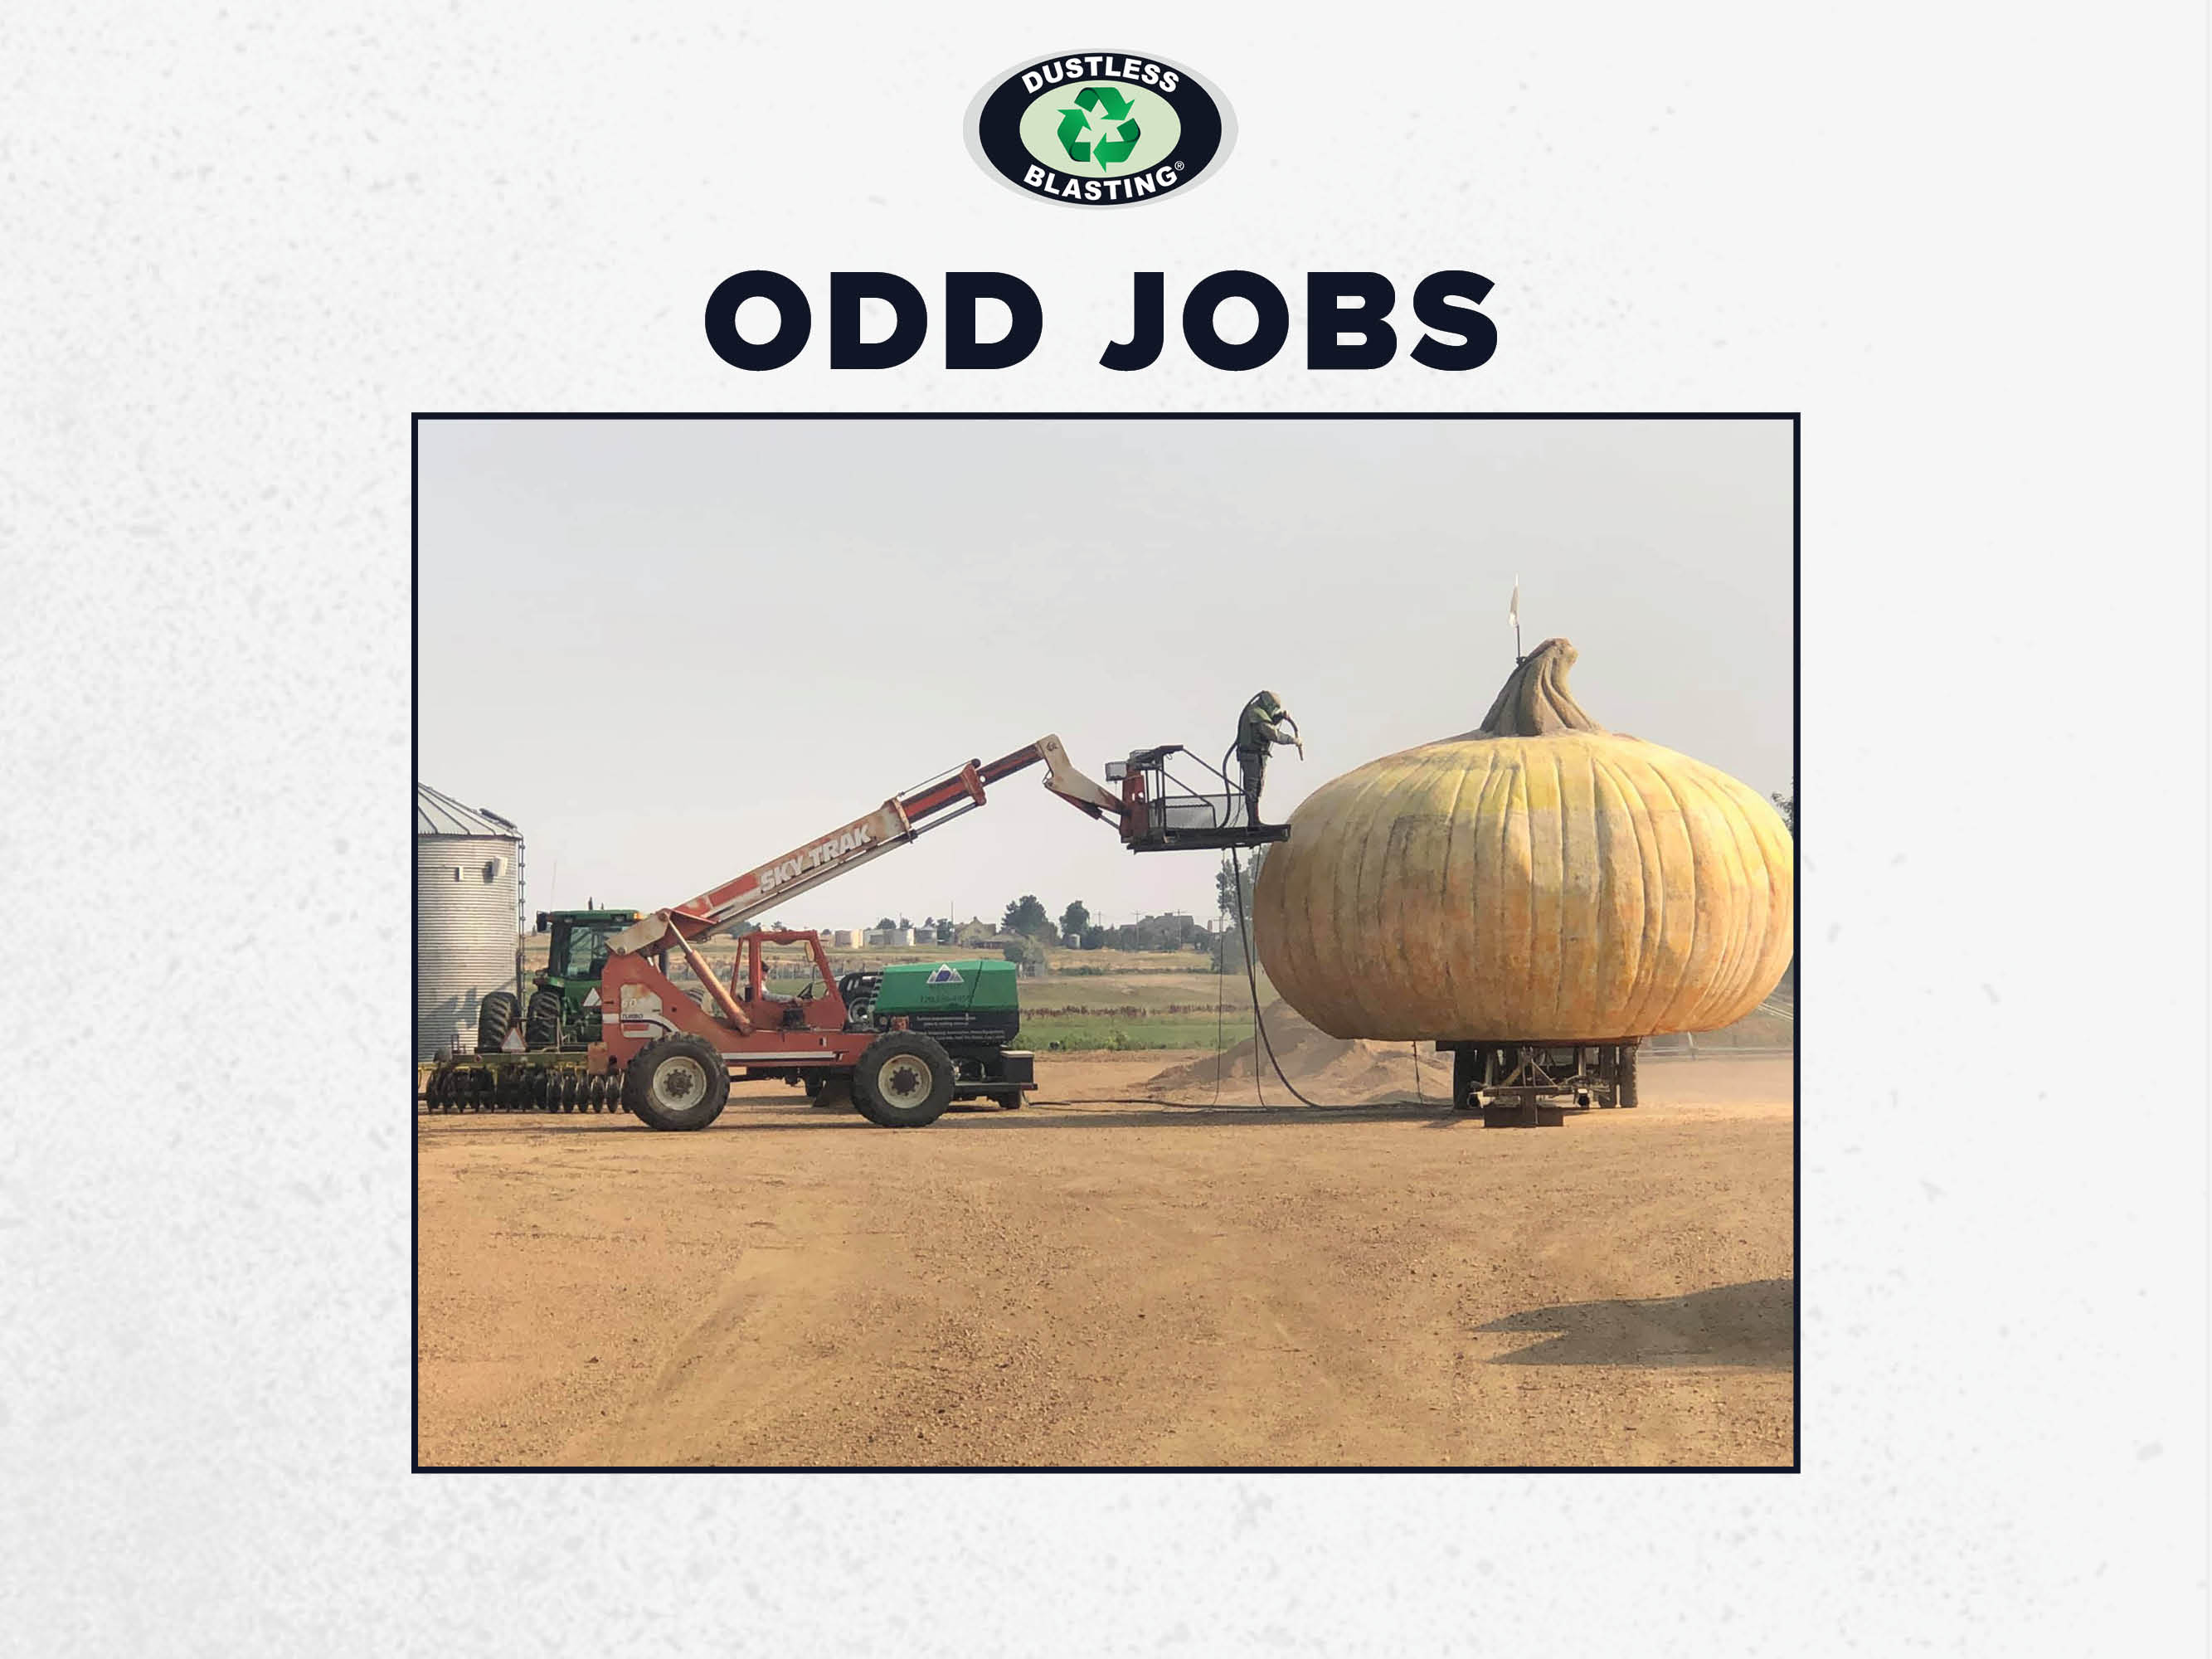 Odd Jobs (640x480)